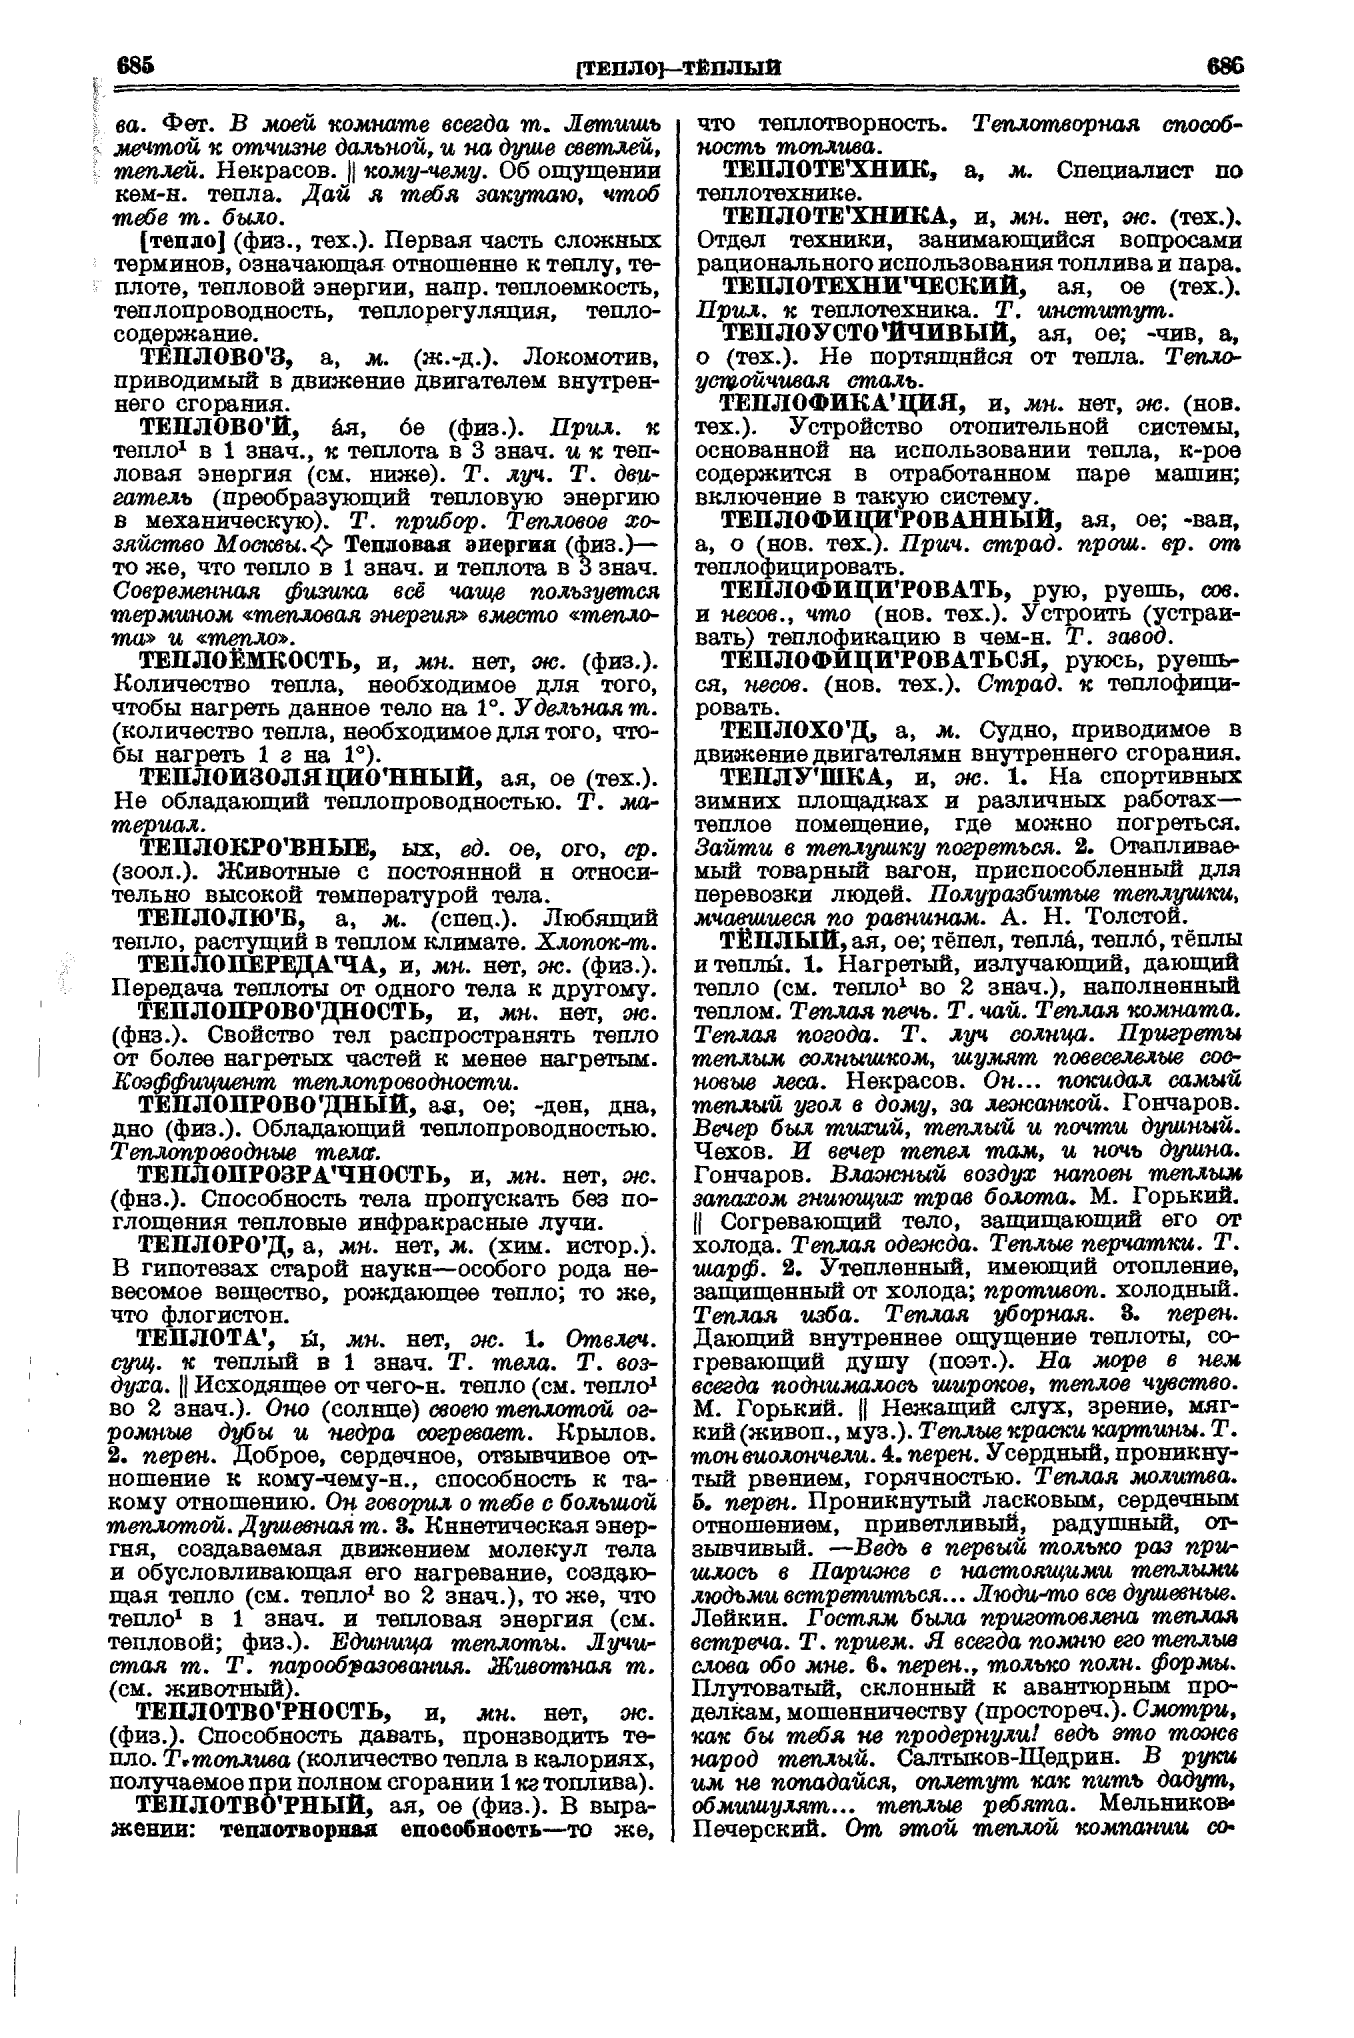 Фотокопия pdf / скан страницы 343 толкового словаря Ушакова (том 1)